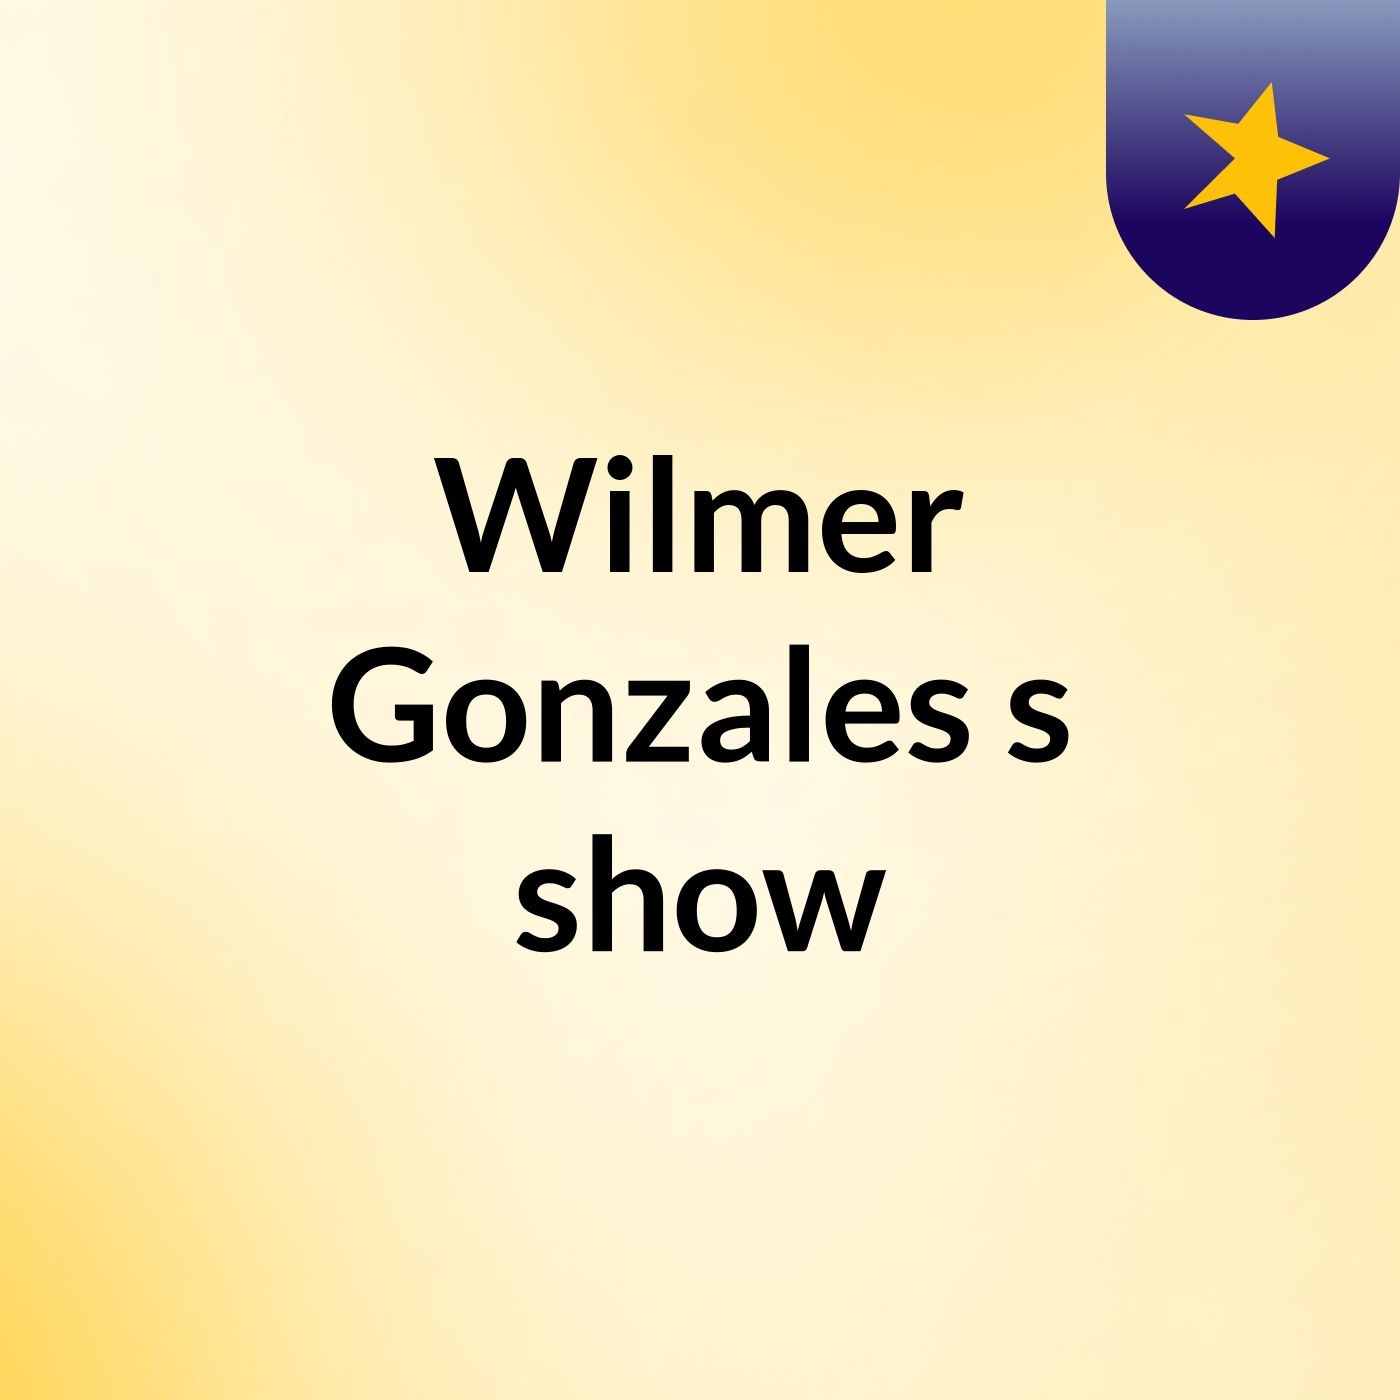 Wilmer Gonzales's show